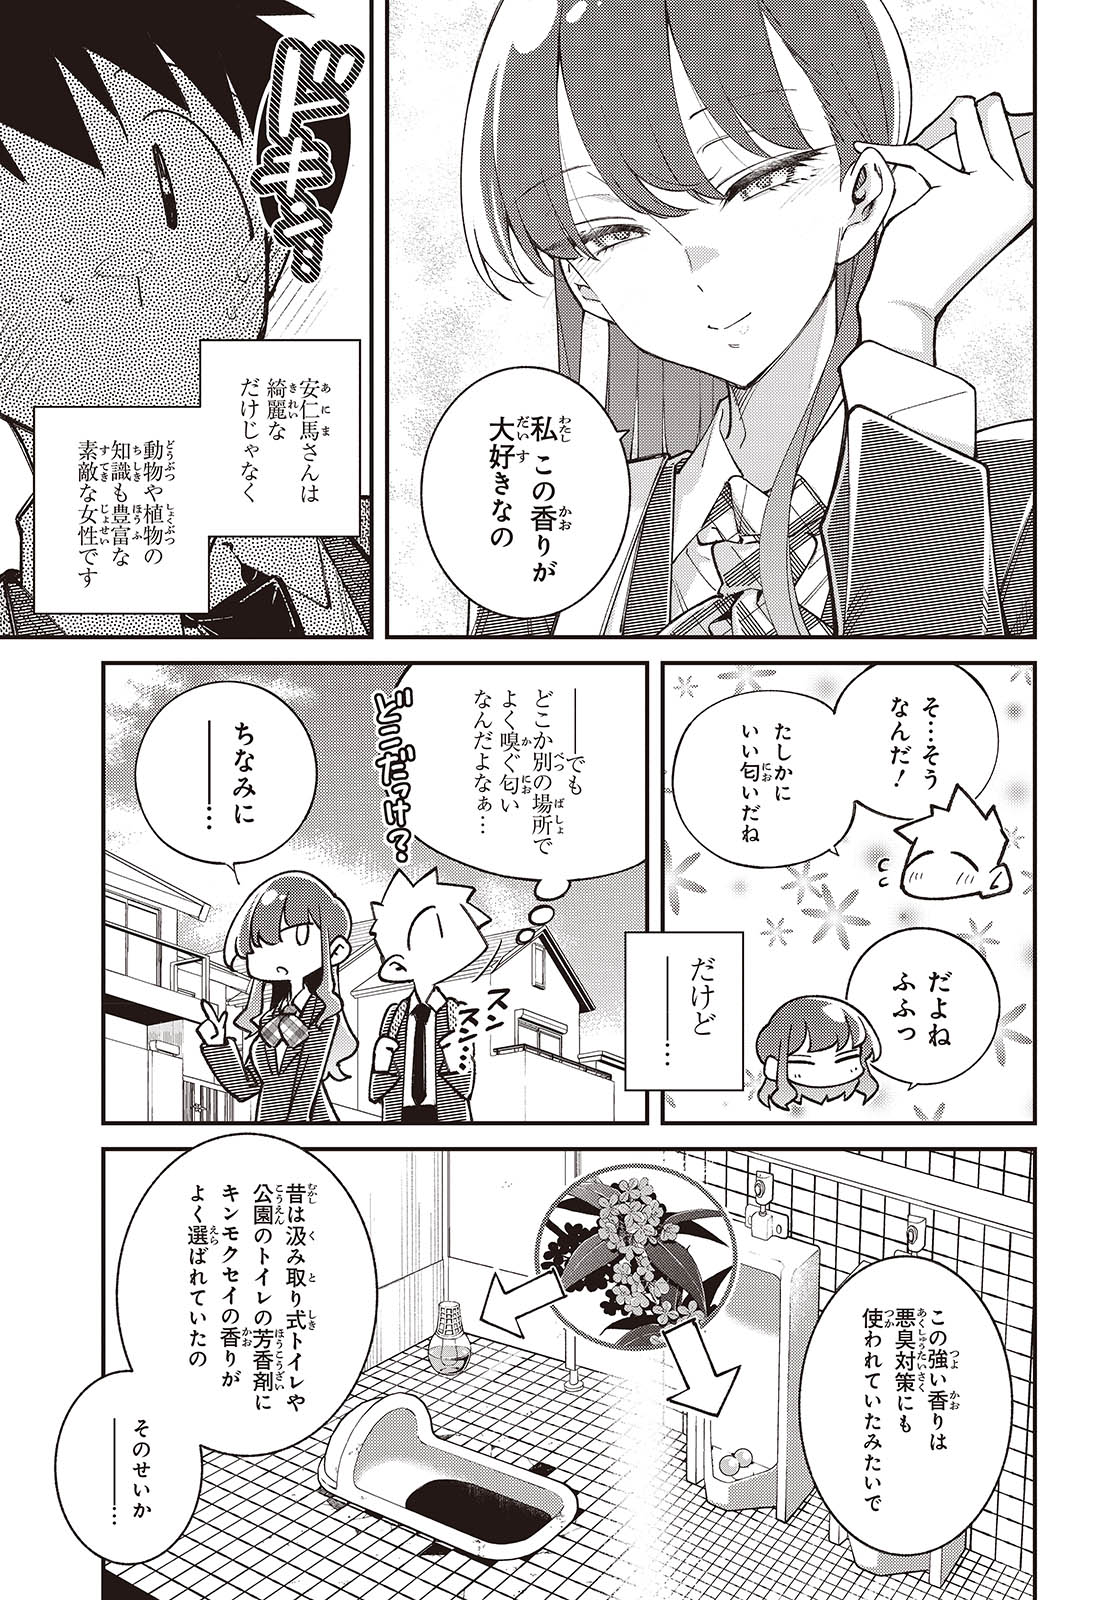 Ikimono-suki no Anima-san ni wa Honno Choppiri Doku ga aru - Chapter 11 - Page 3